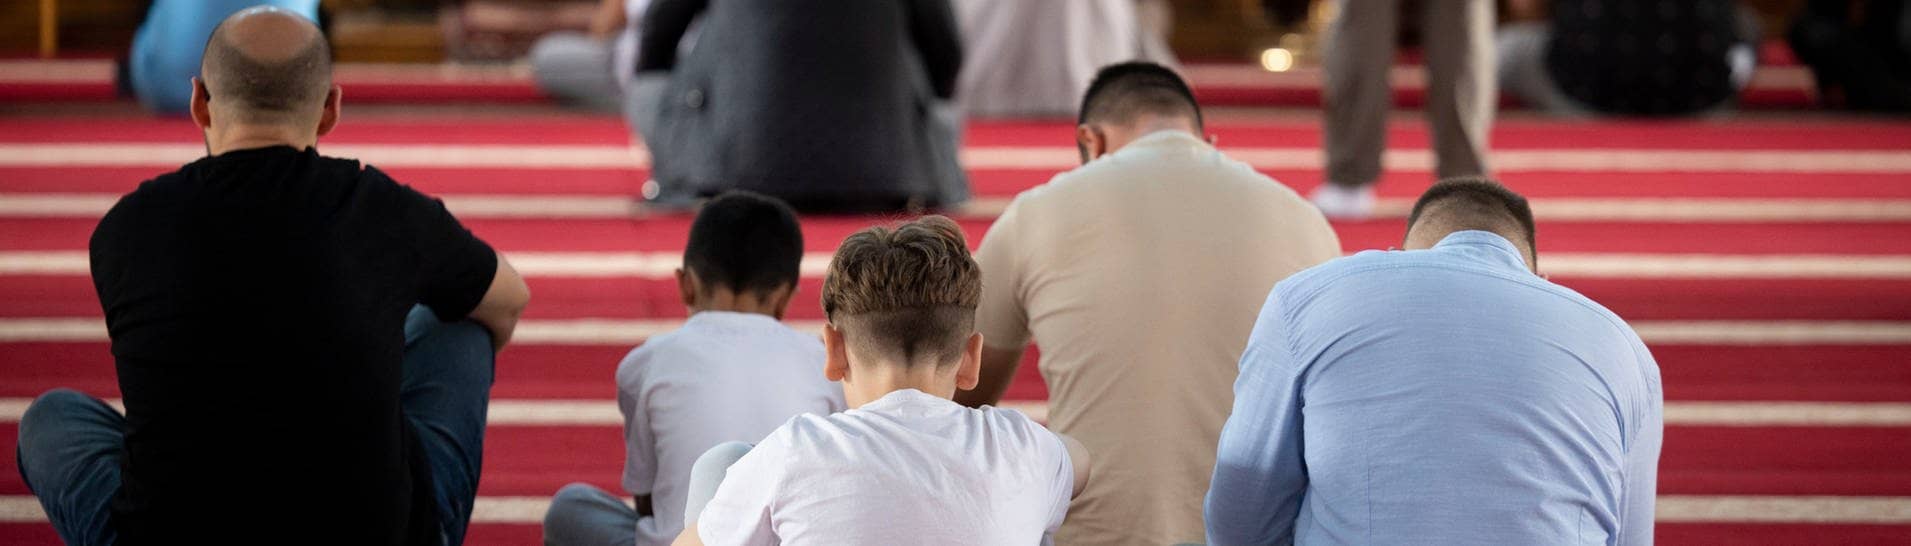 Muslime nehmen am Freitagsgebet in der Merkez DITIB Moschee teil. Nach dem Aufruf der Terrororganisation Hamas zu ihrer weltweiten Unterstützung an diesem Freitag warnt die Türkische Gemeinde davor, dem nachzukommen.